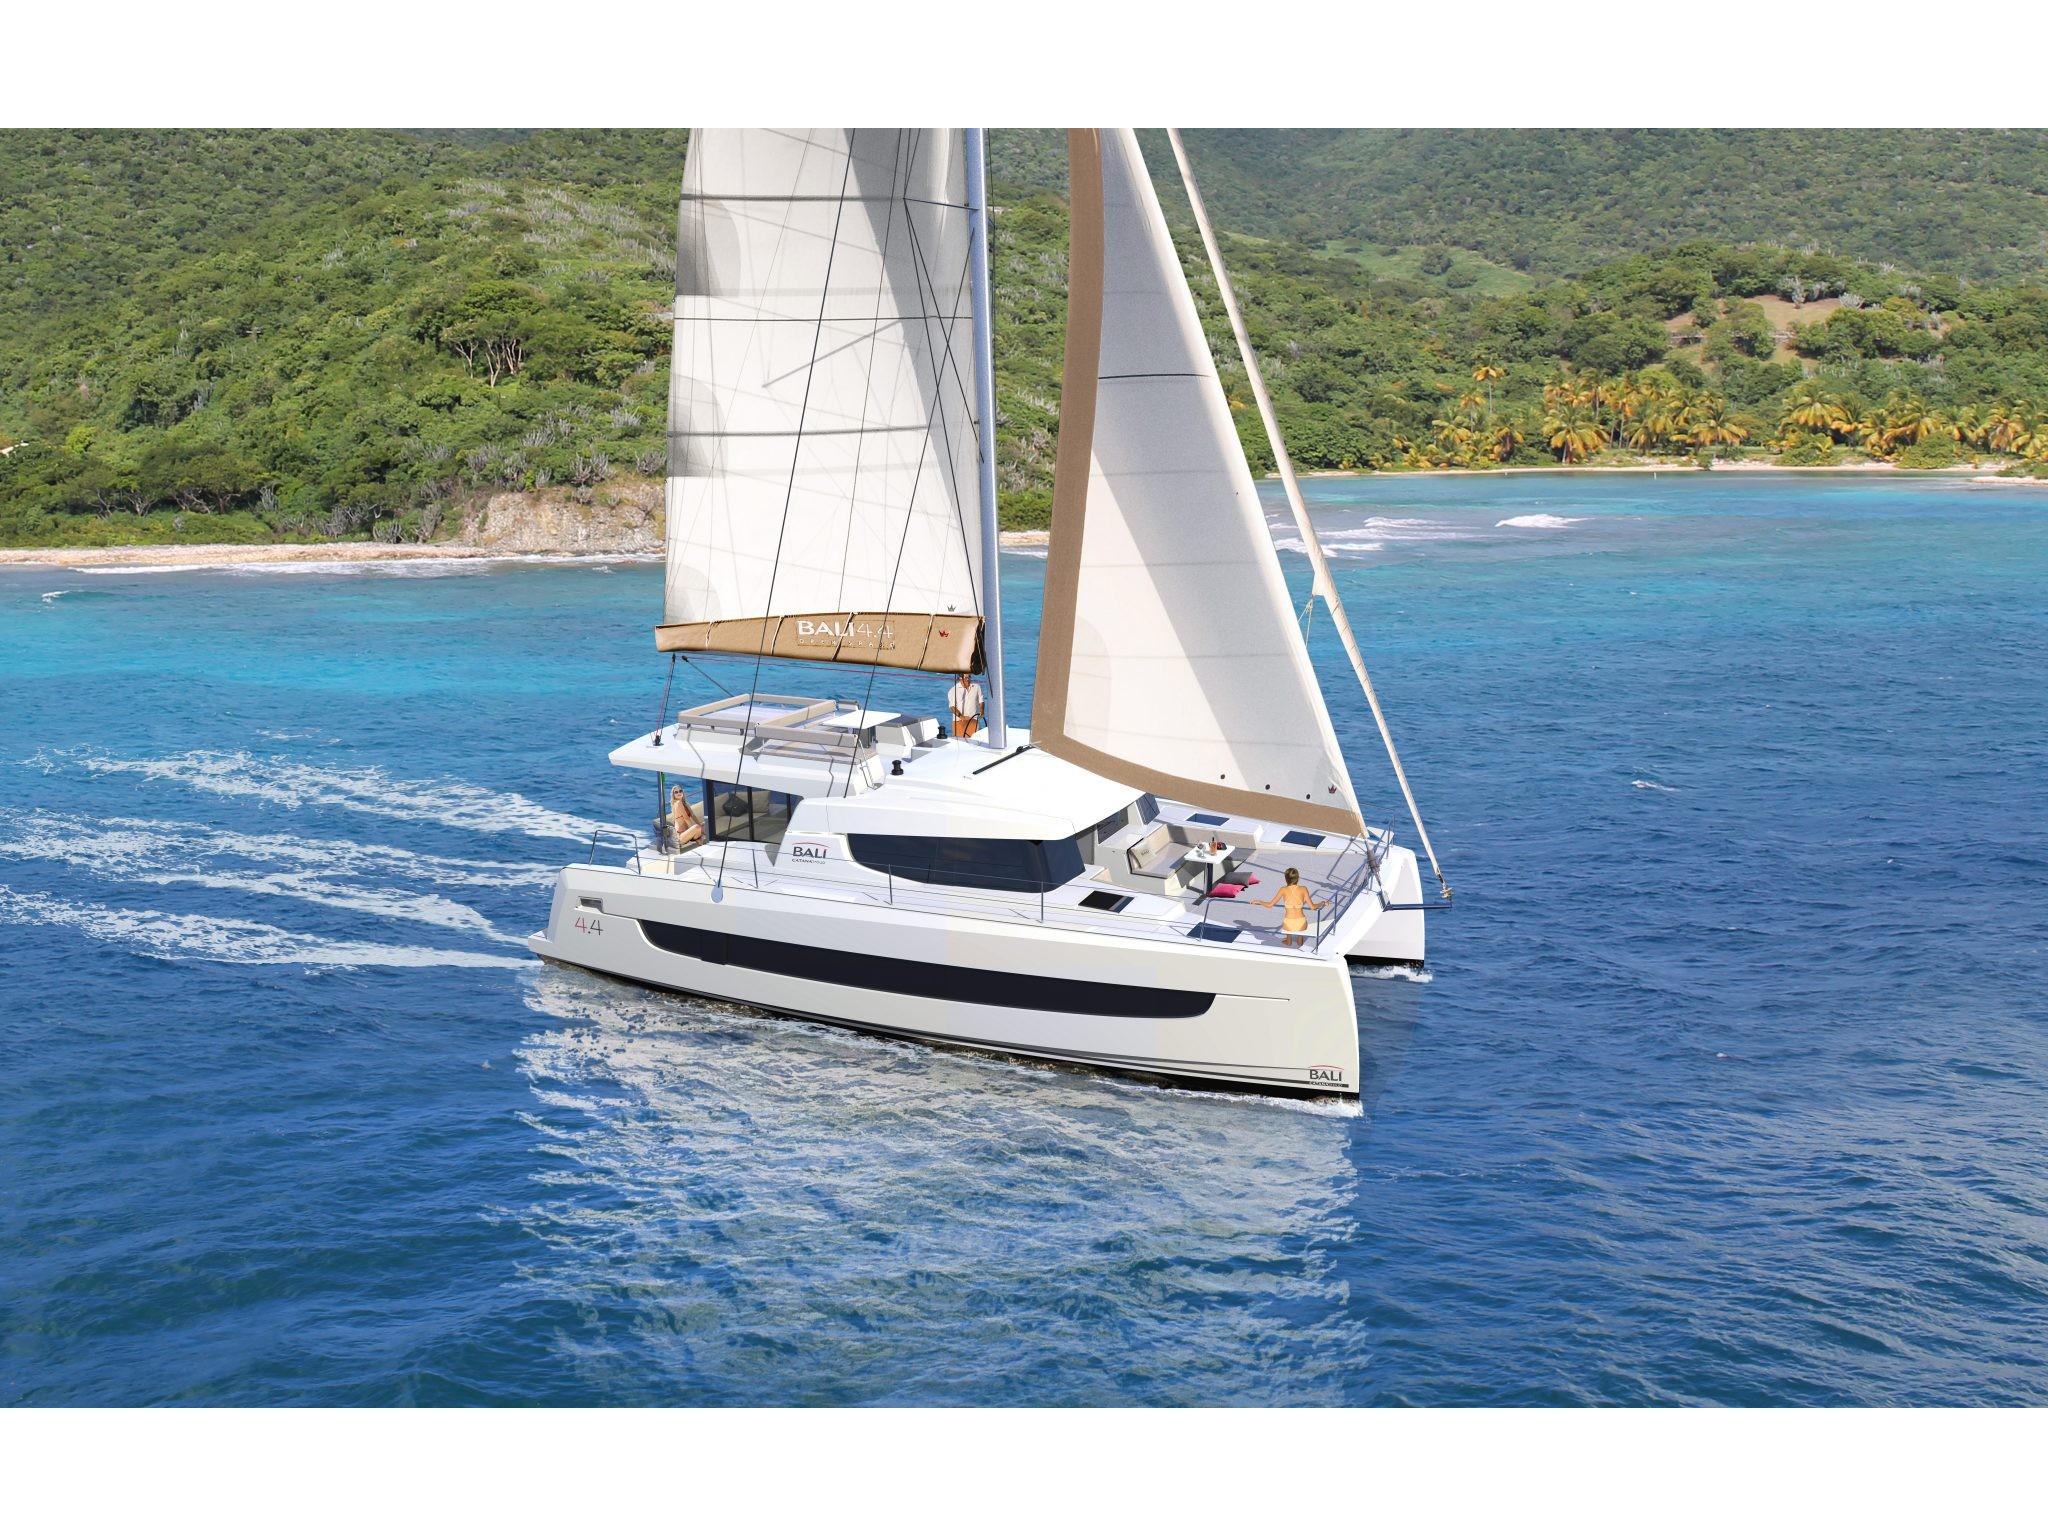 Bali 4.4 - Yacht Charter Golfo Aranci & Boat hire in Italy Sardinia Costa Smeralda Golfo Aranci Marina dell'Isola 1